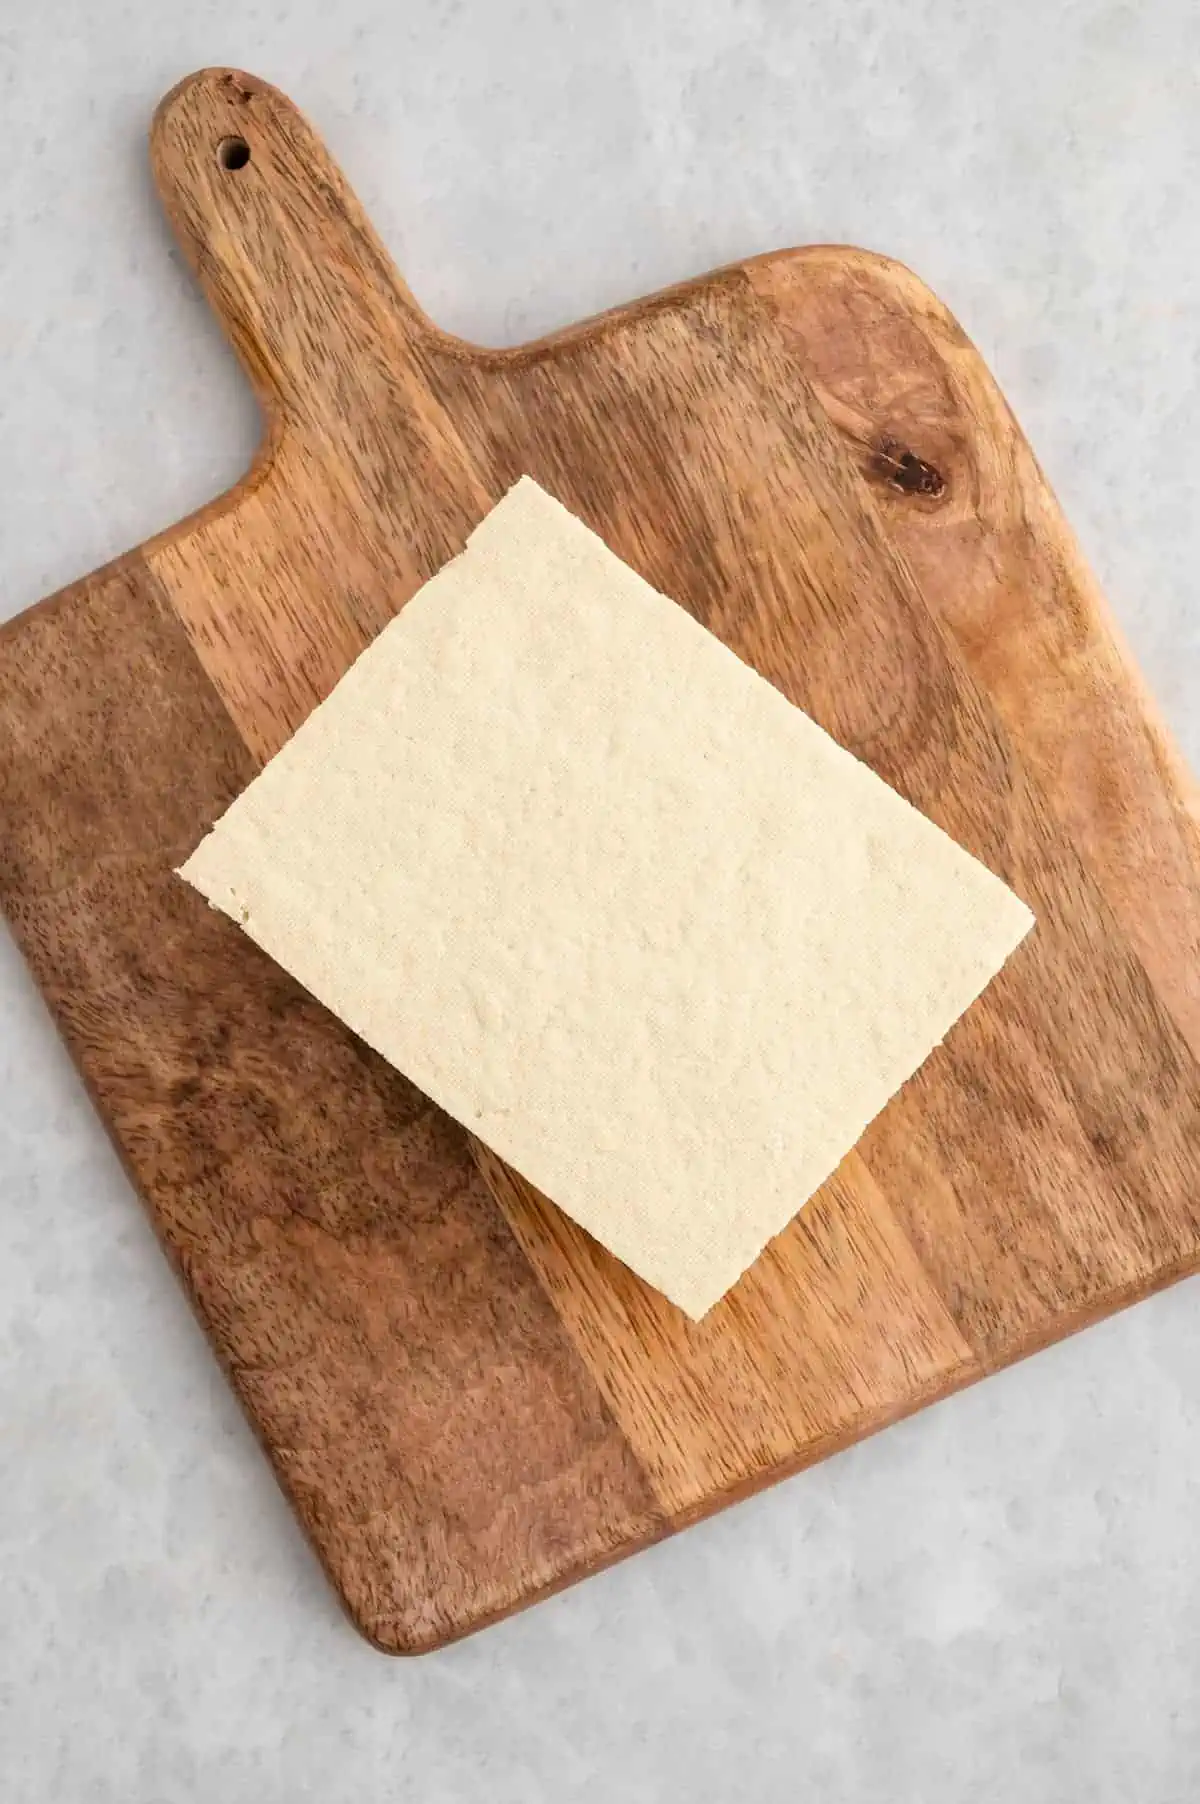 A block of raw tofu on a cutting board.